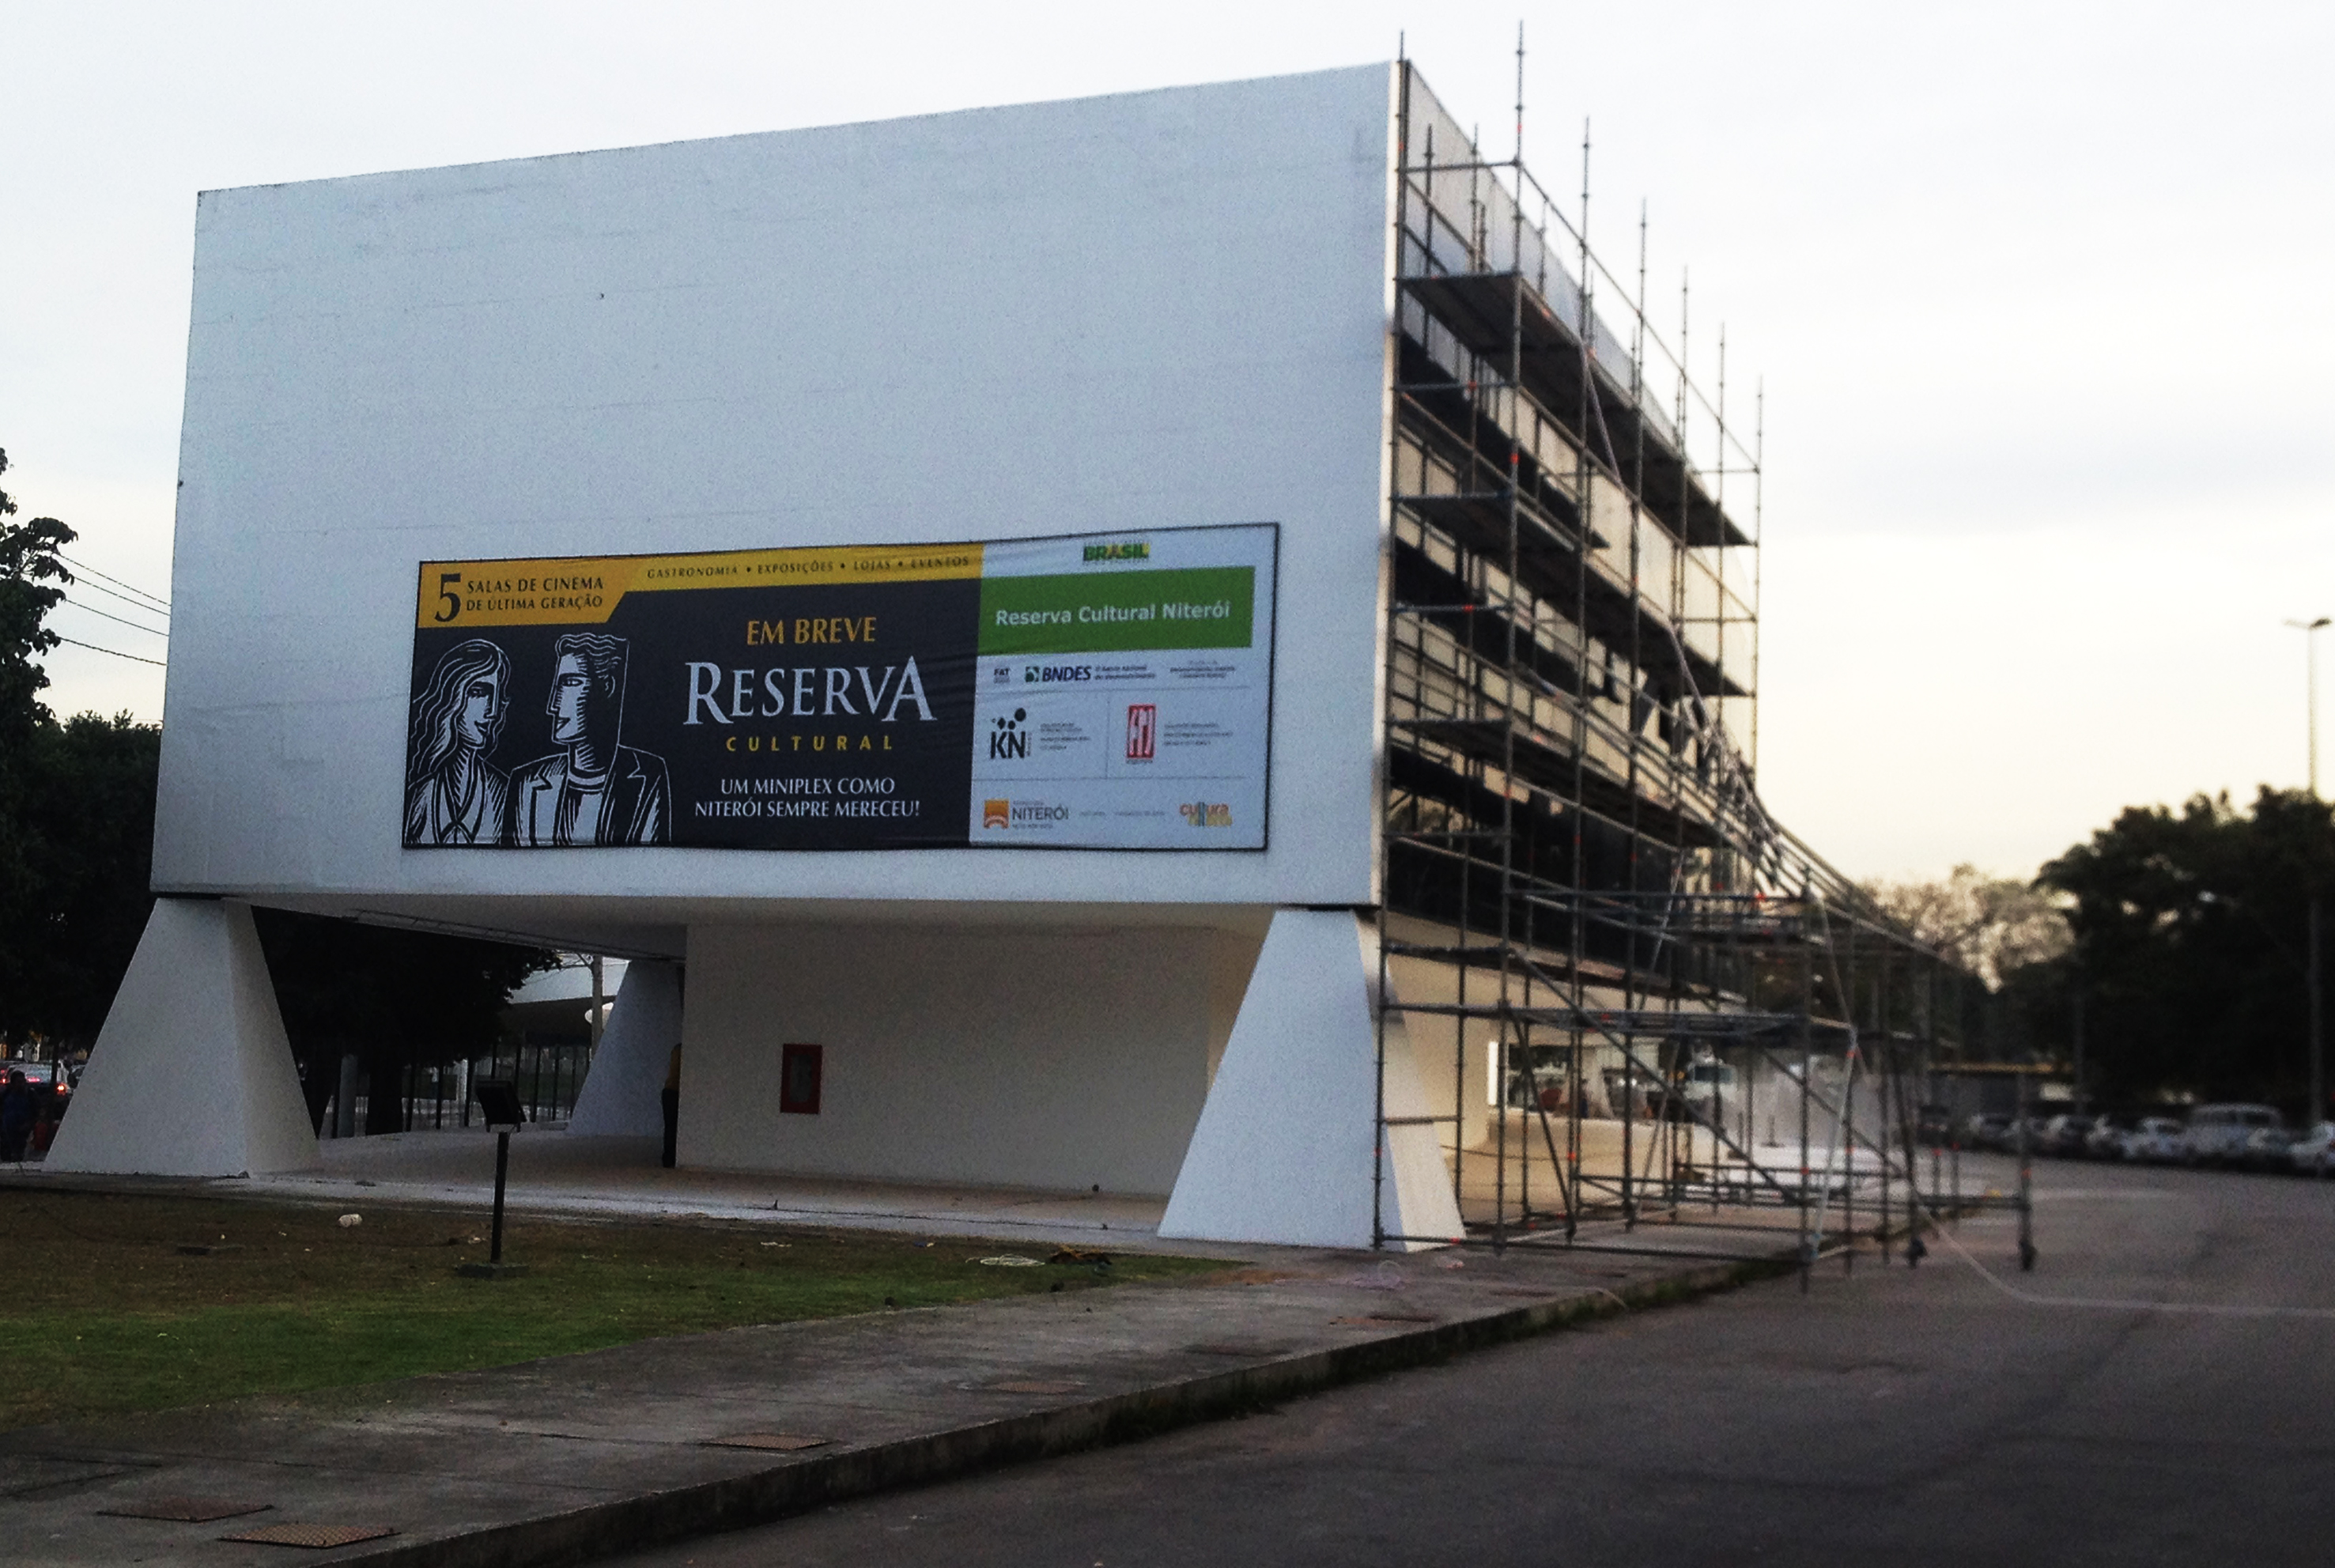  11 jier sletten, Petrobras de Cinema Center iepenet opnij yn Rio